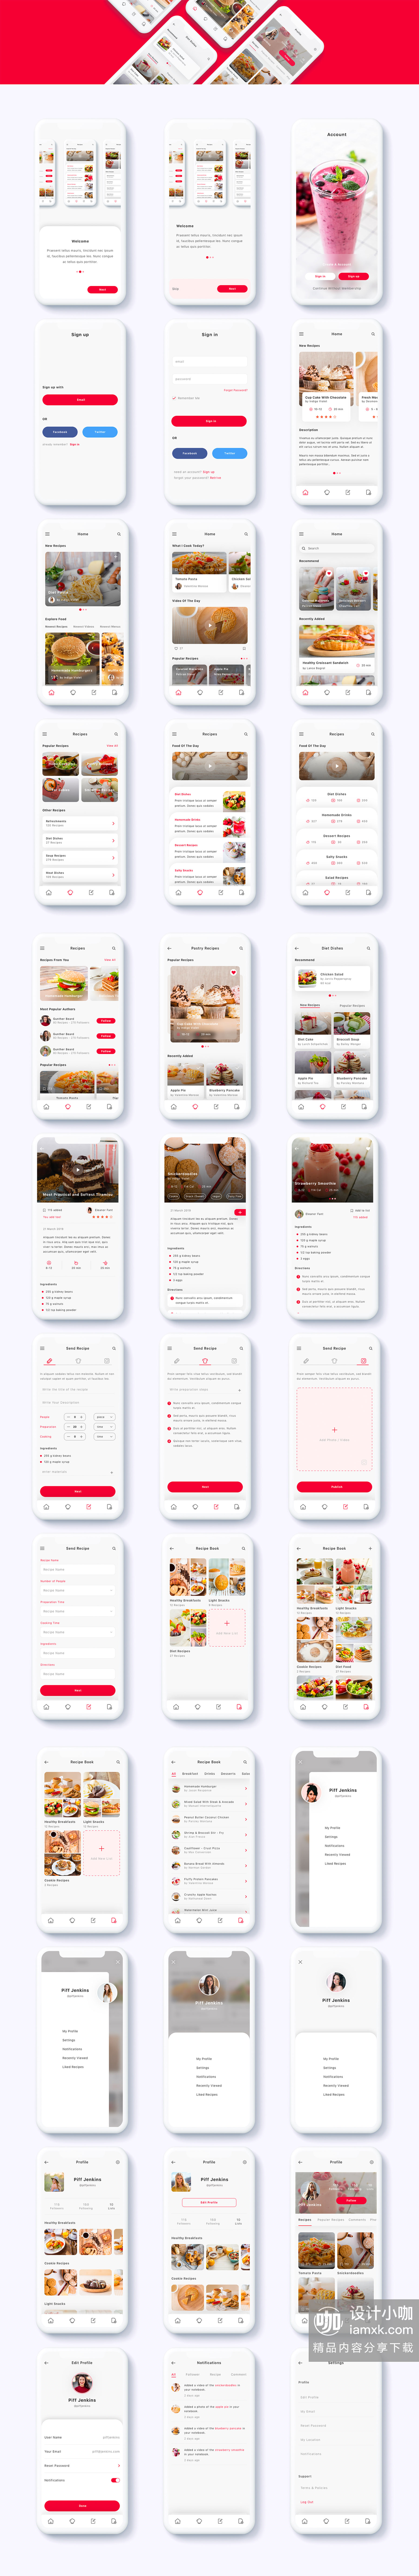 第一素材下午茶：美食社交订餐点餐类APP UI KIT套装模板下载 app设计app界面设计Sketch素材Sketch模板 [Sketch,XD]插图(5)